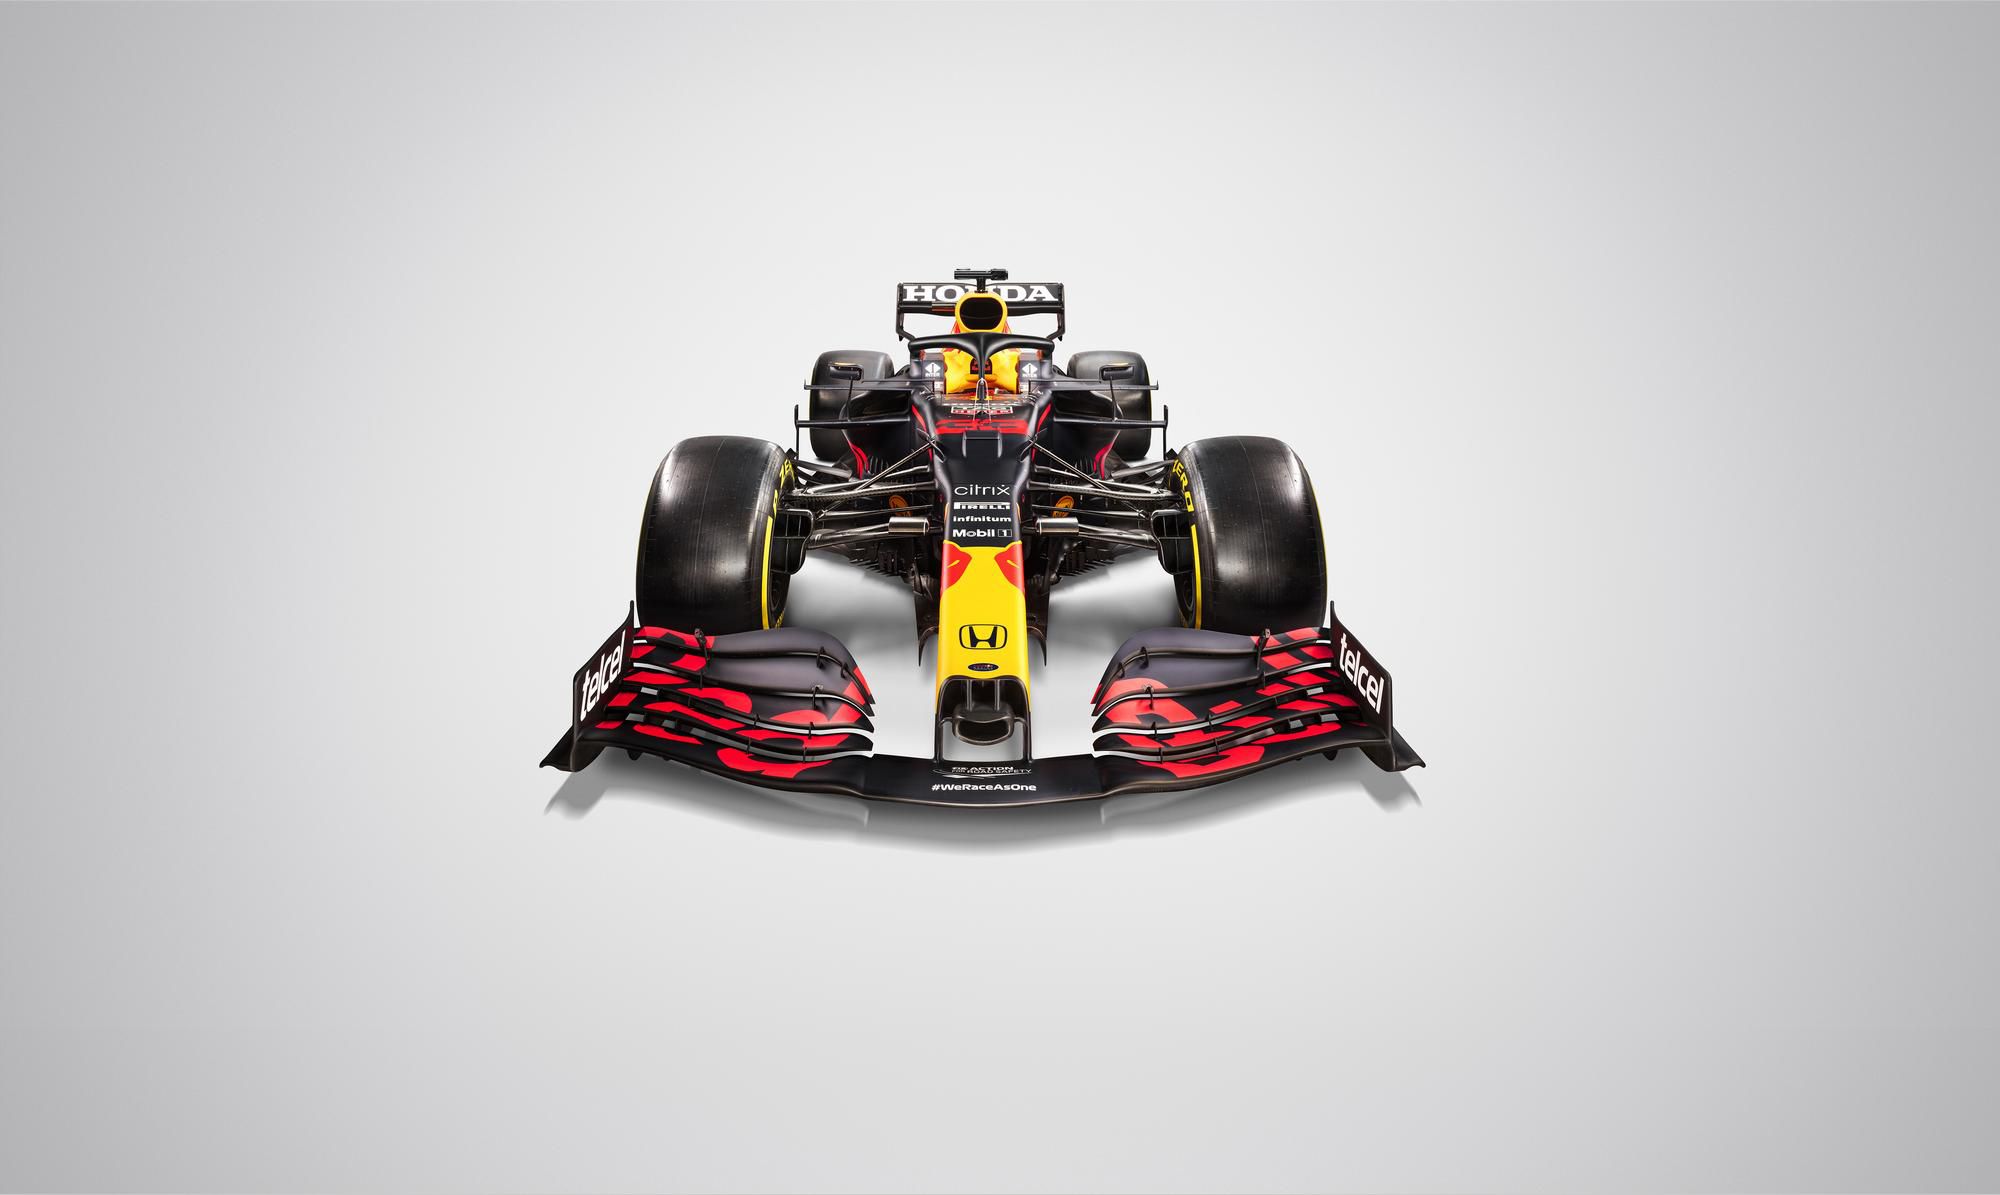 Monopost tímu Red Bull pre sezónu 2021 s označením RB16B.